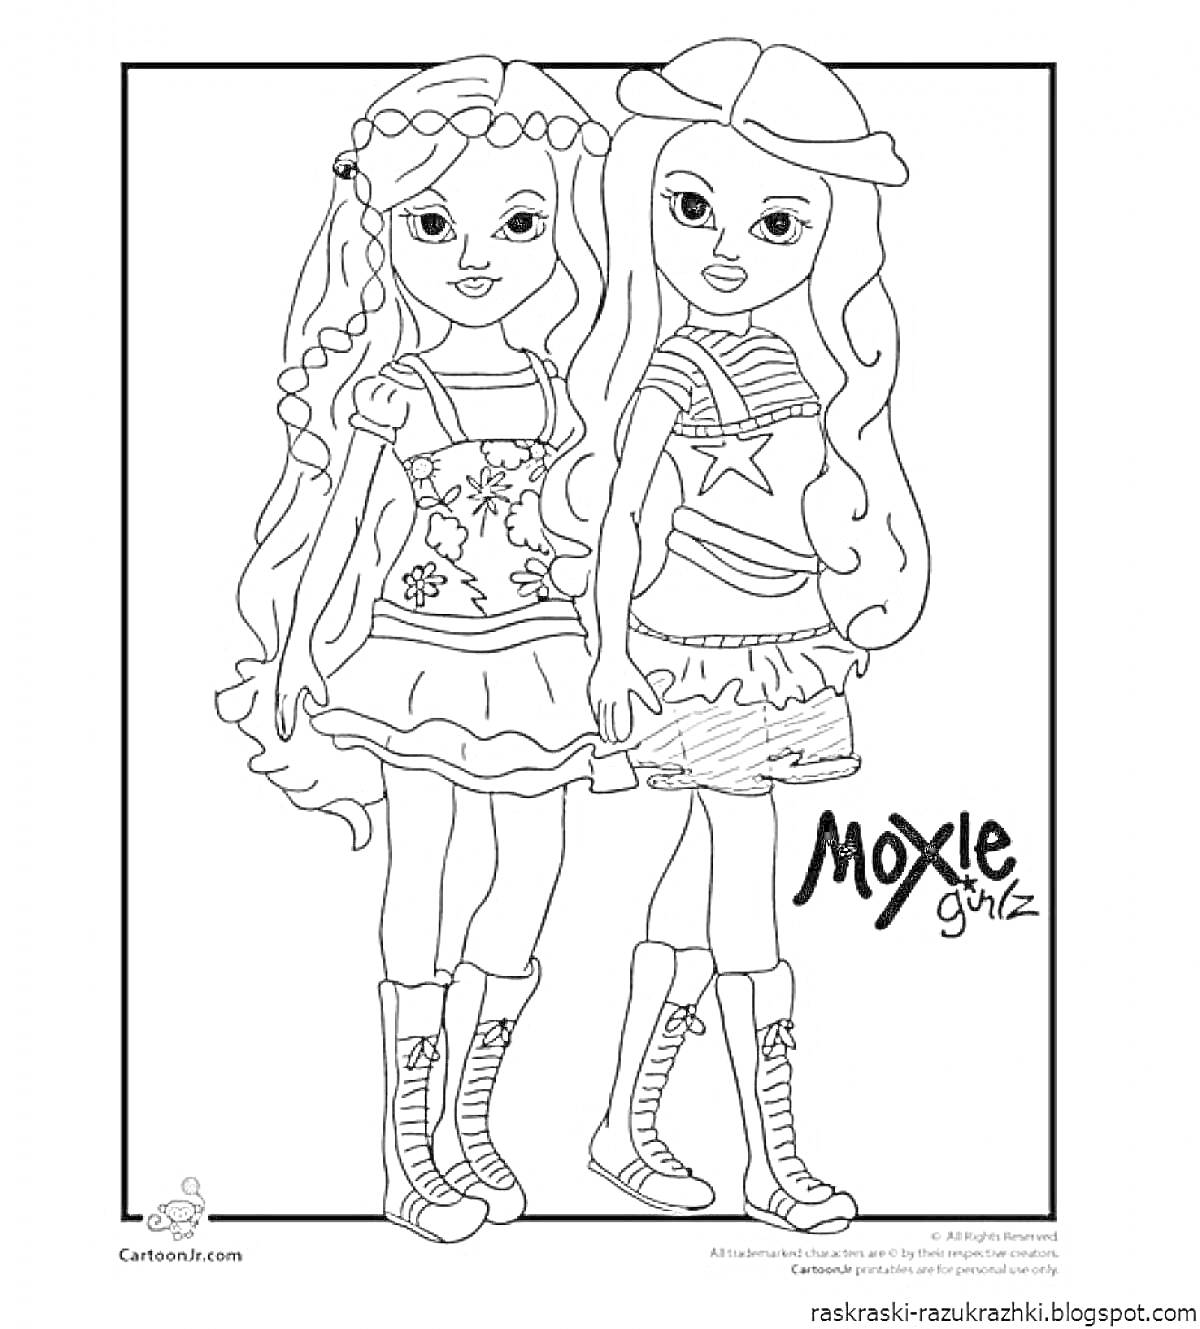 Раскраска Две девушки в платьях и сапогах с надписью 